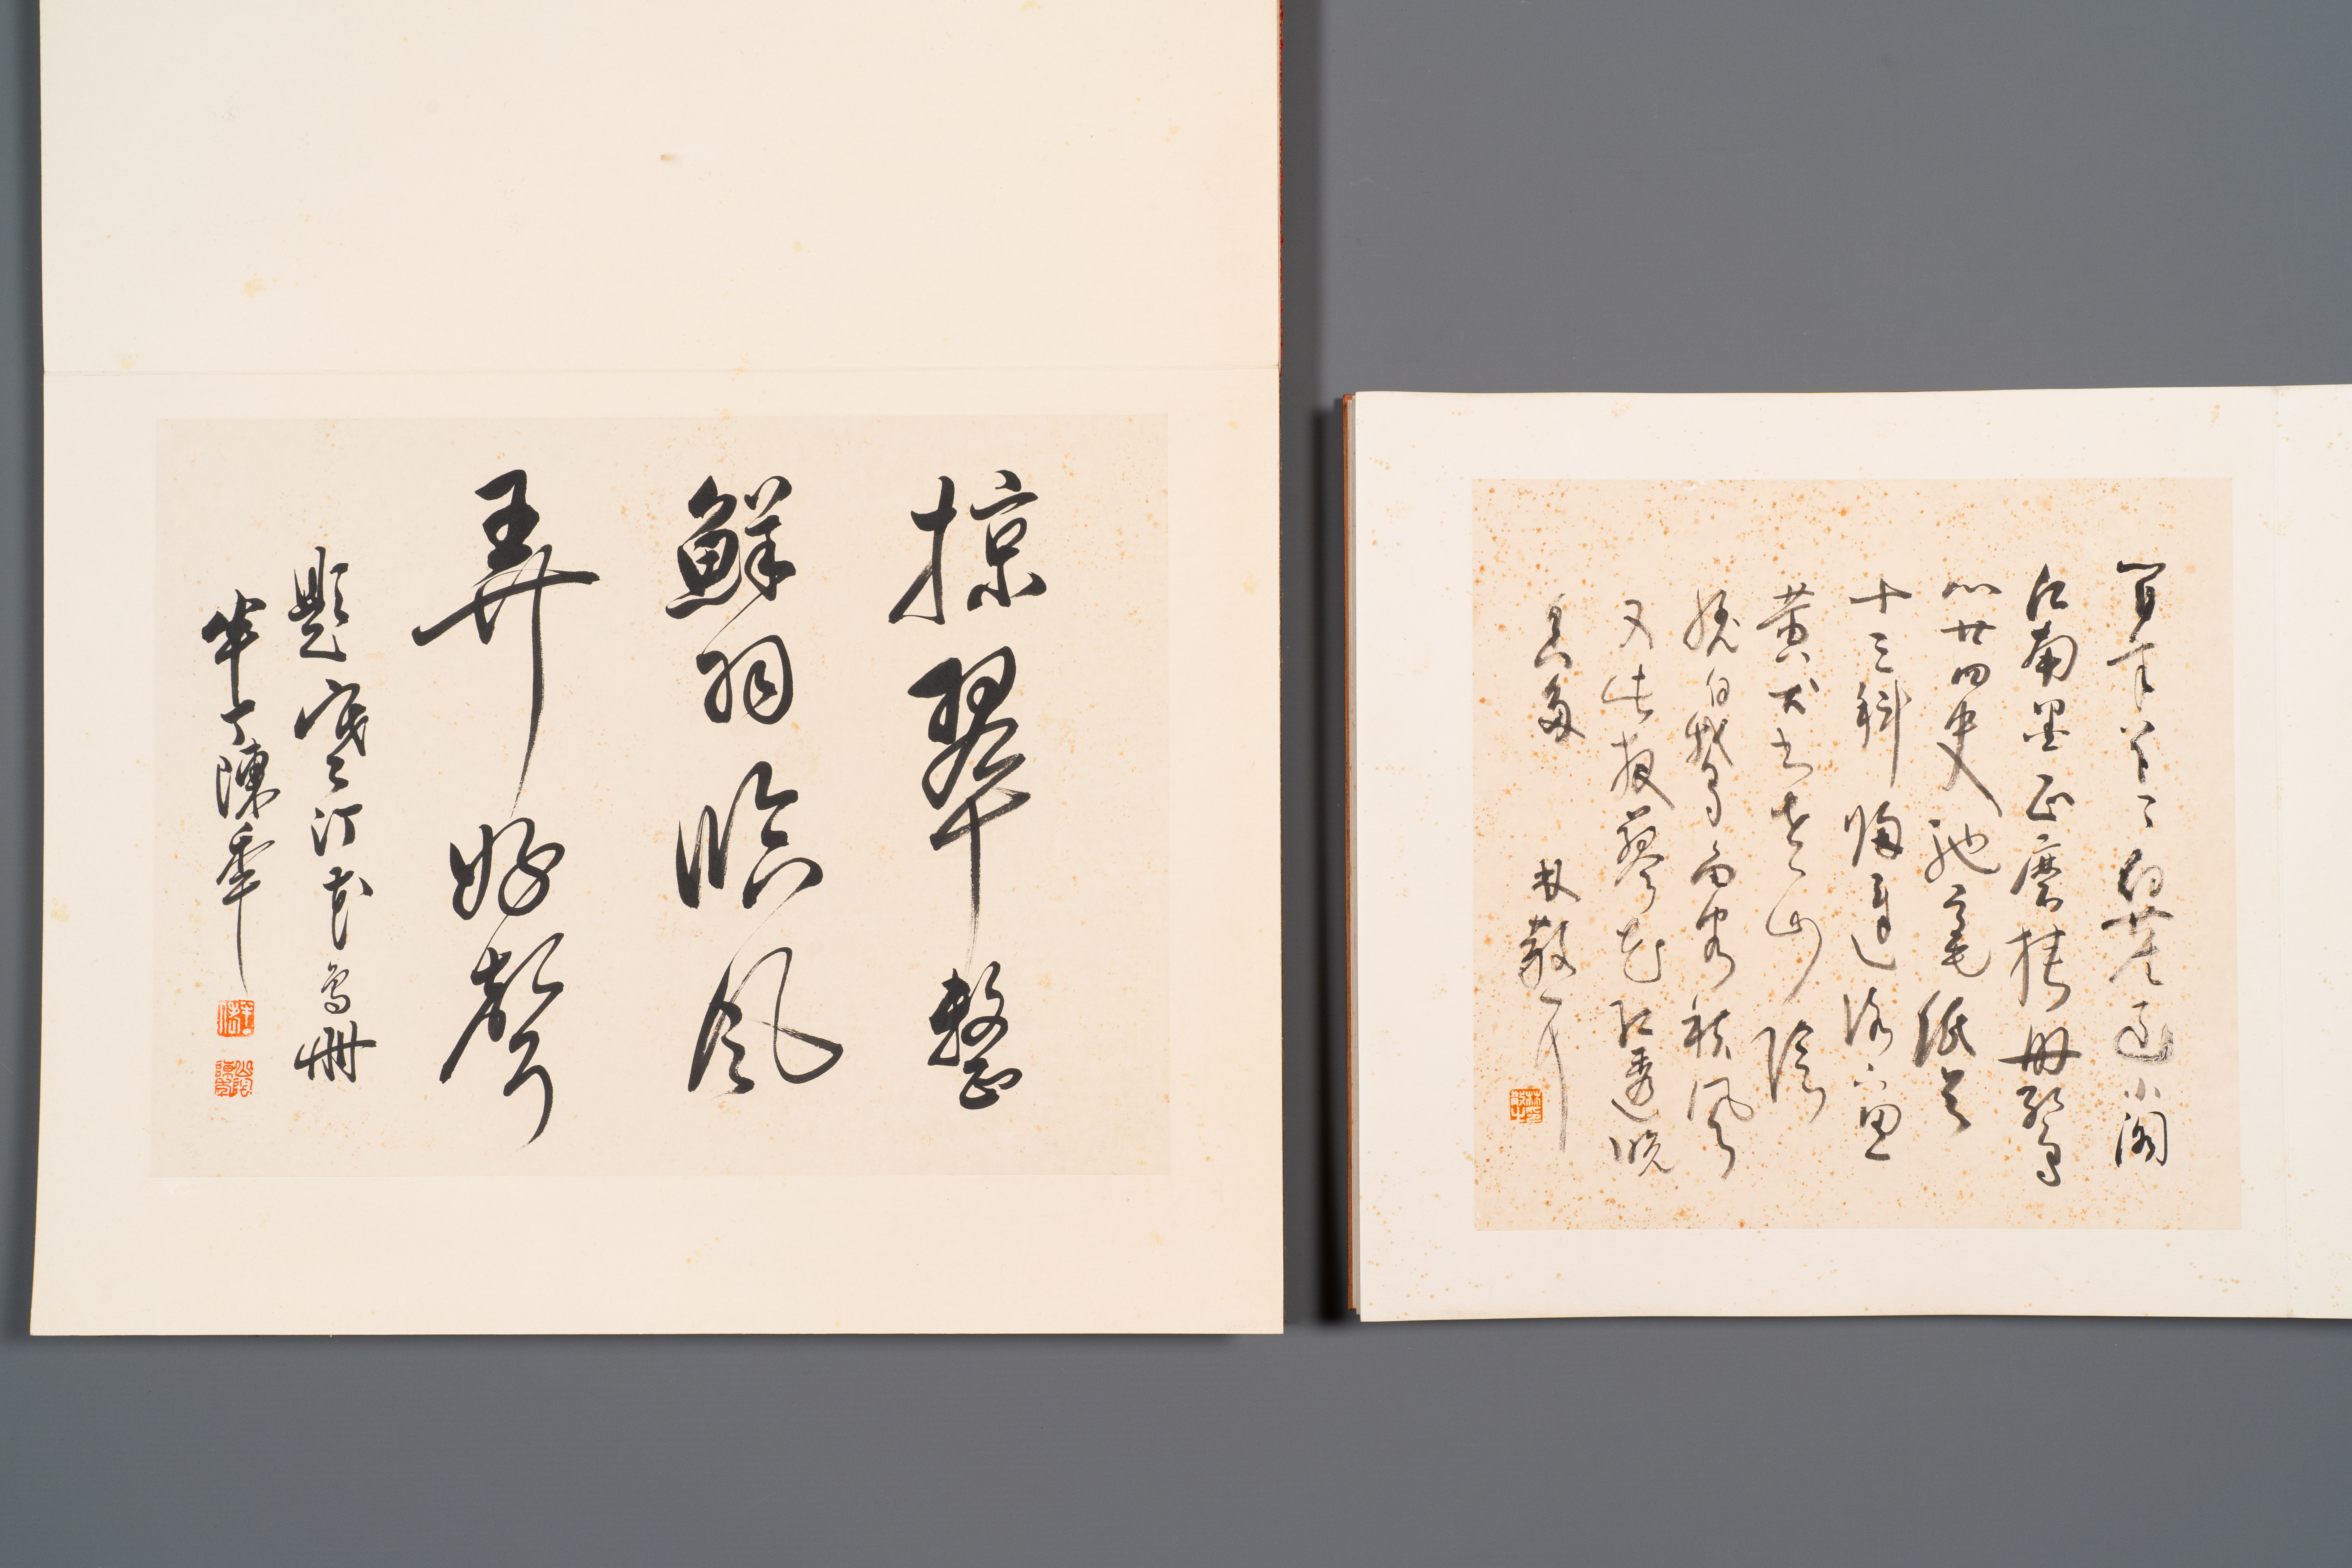 Three albums: 'Jiang Hanting æ±Ÿå¯’æ±€ (1904-1963), Lin Sanzhi æž—æ•£ä¹‹ (1898-1989) and Qi Gong å¯ - Image 12 of 23